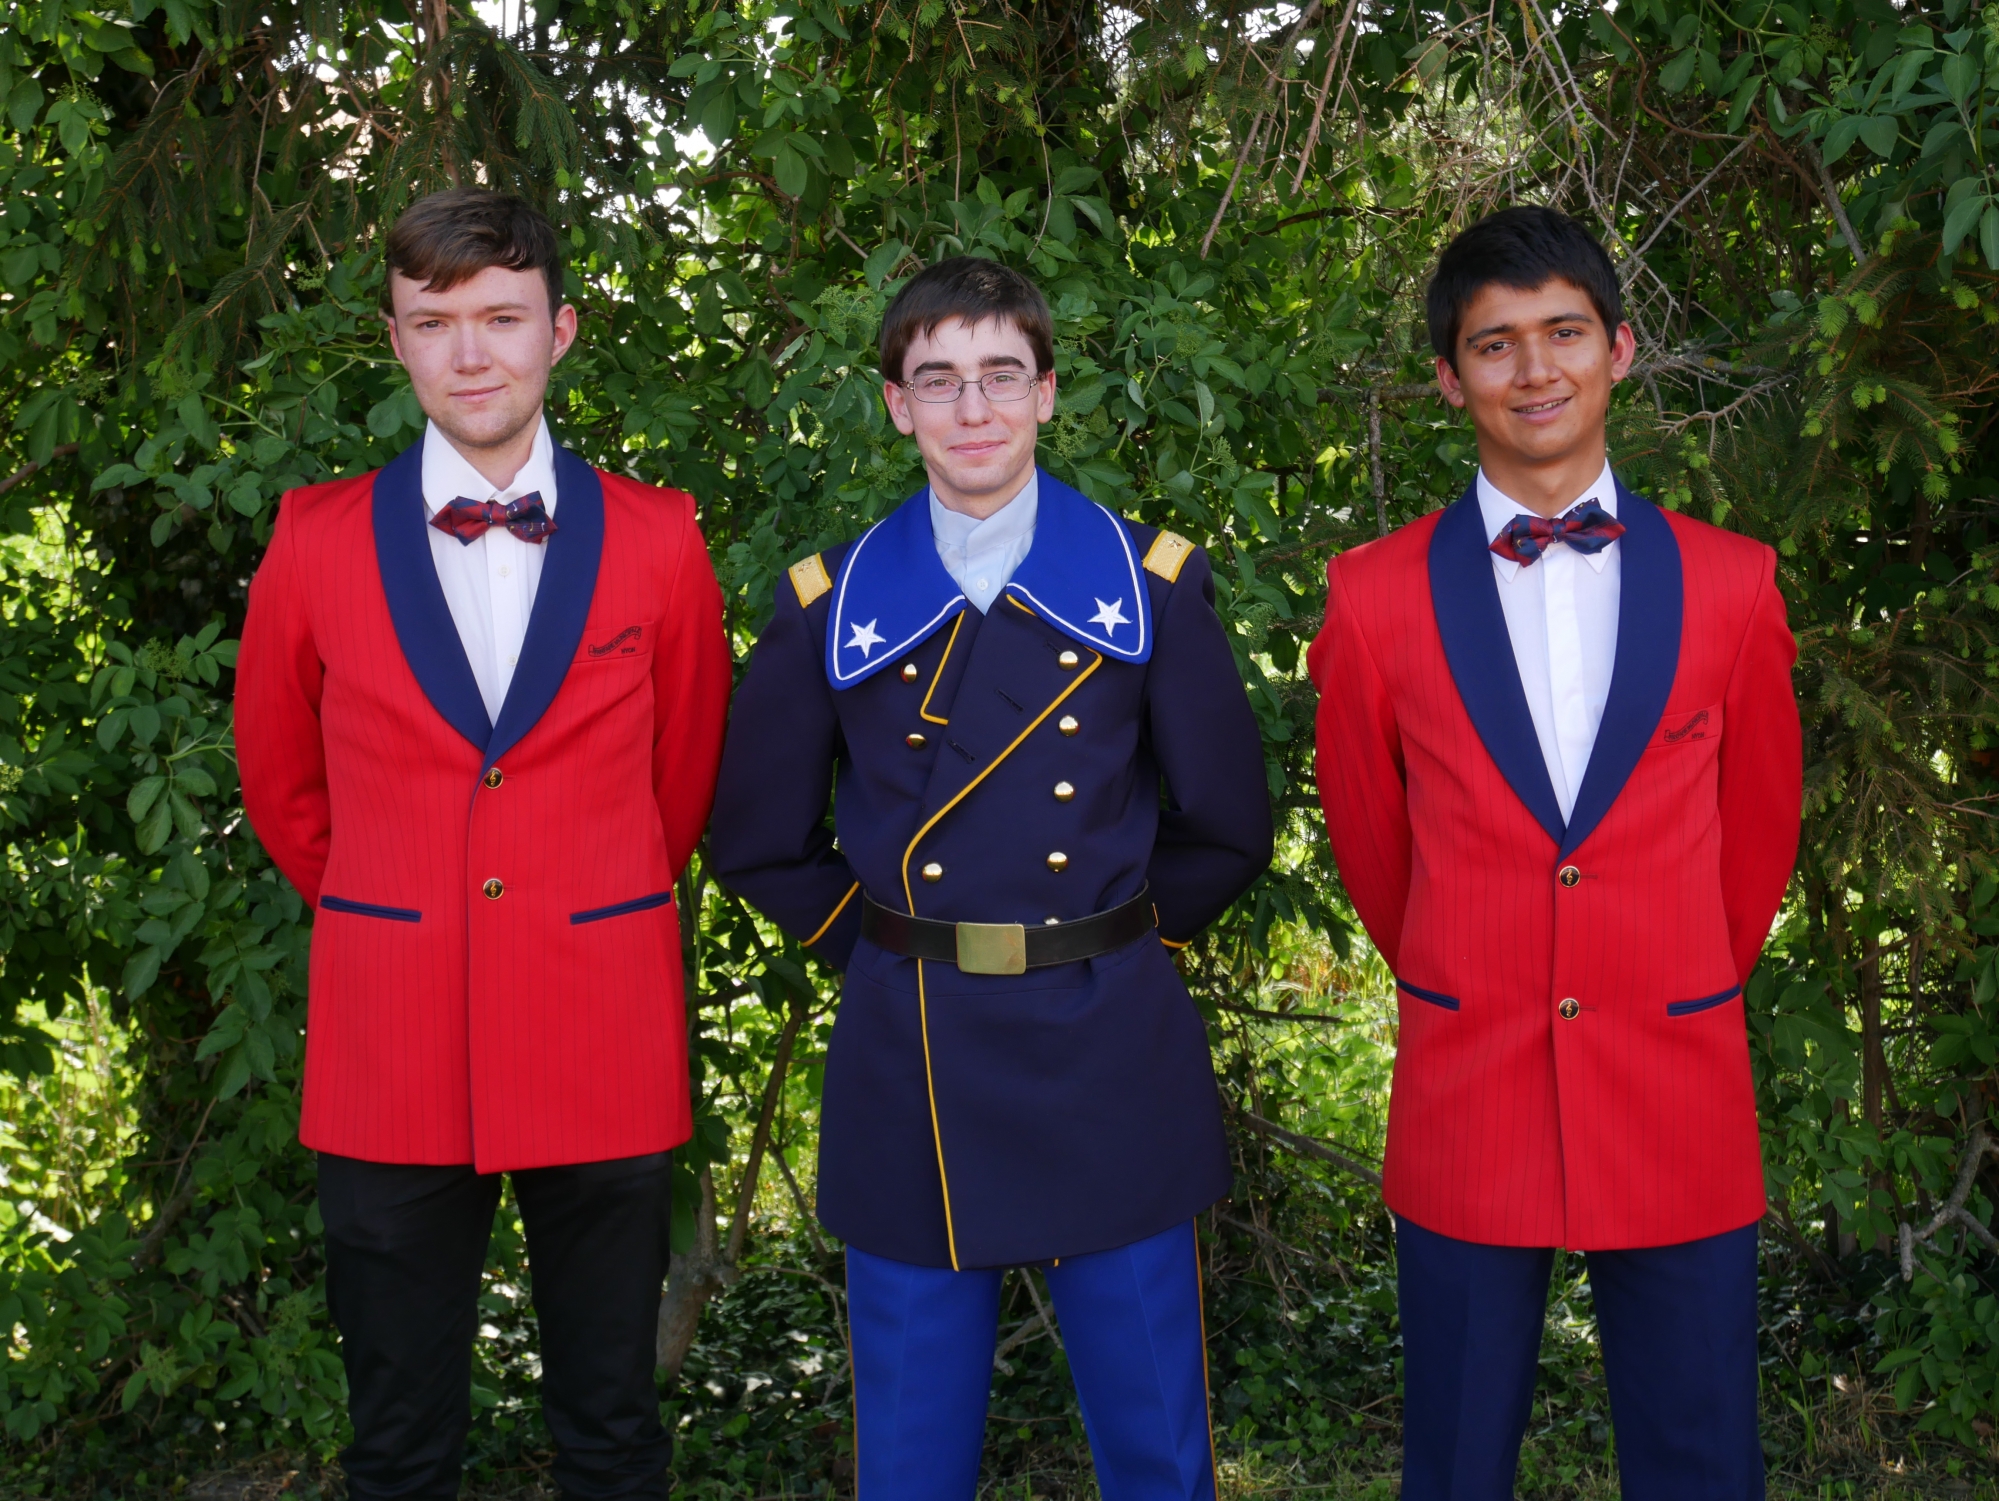 De gauche à droite: David Campbell, Samuel Dorsaz, et Adrian Perera font partie de la fanfare de l'école de recrue. David Campbell et Adrian Perera posent ici dans l'uniforme rouge de la Fanfare de Nyon.